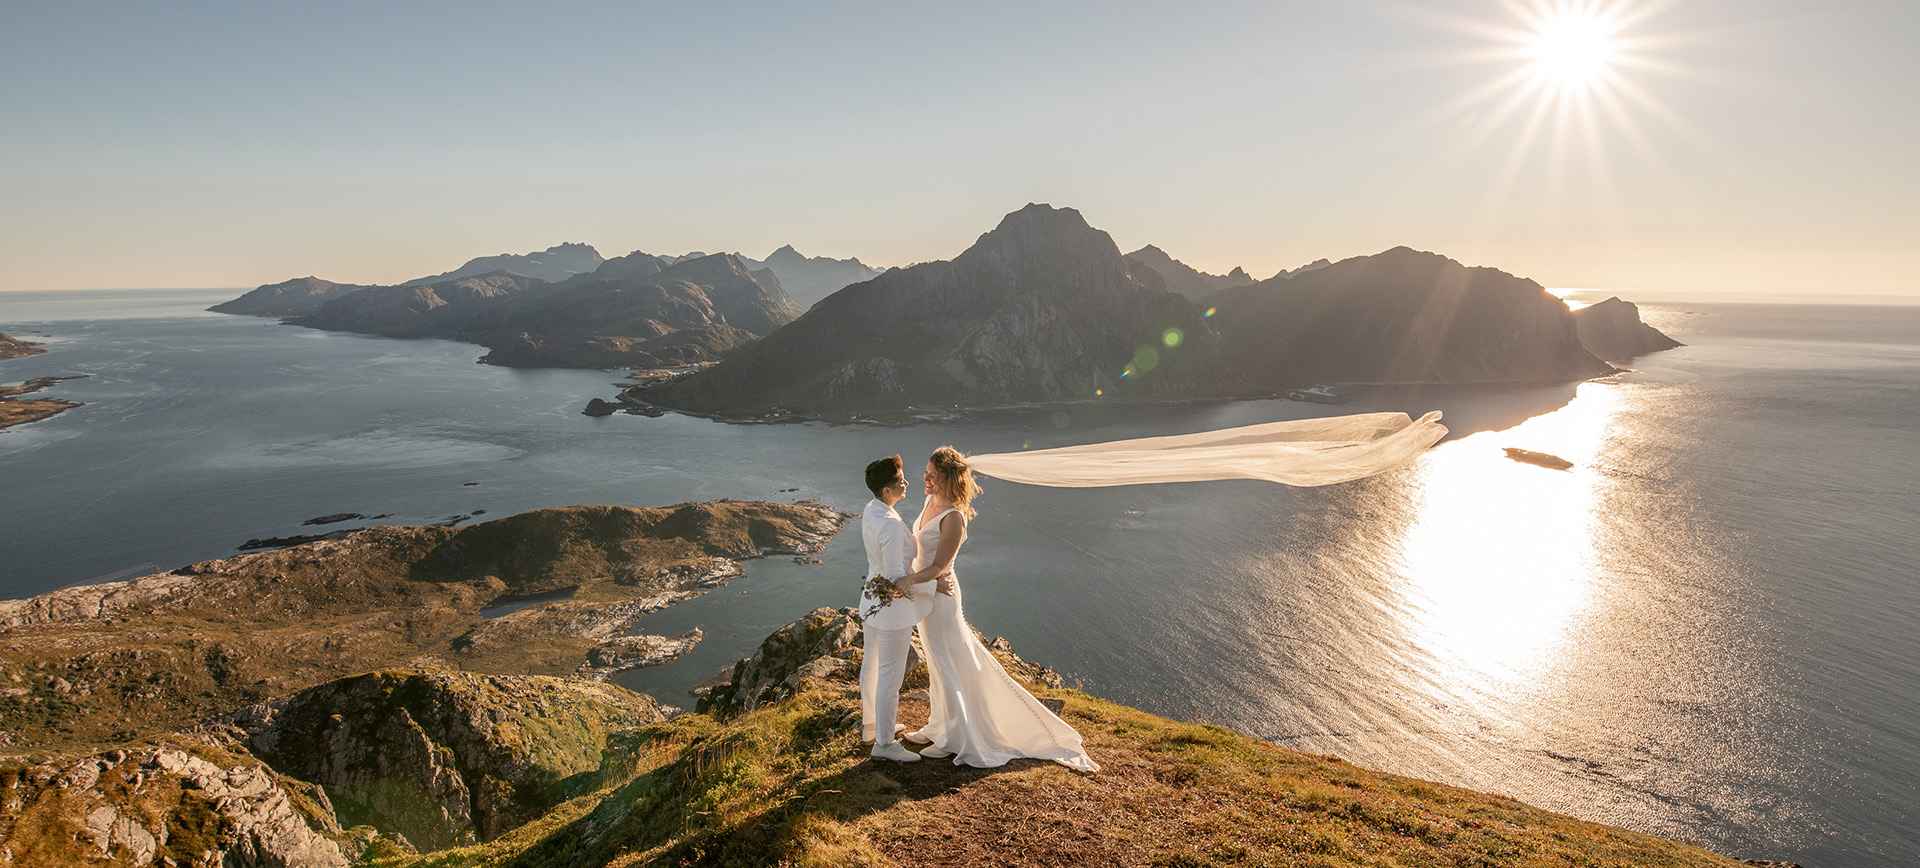 norway elopement package on the lofoten islands